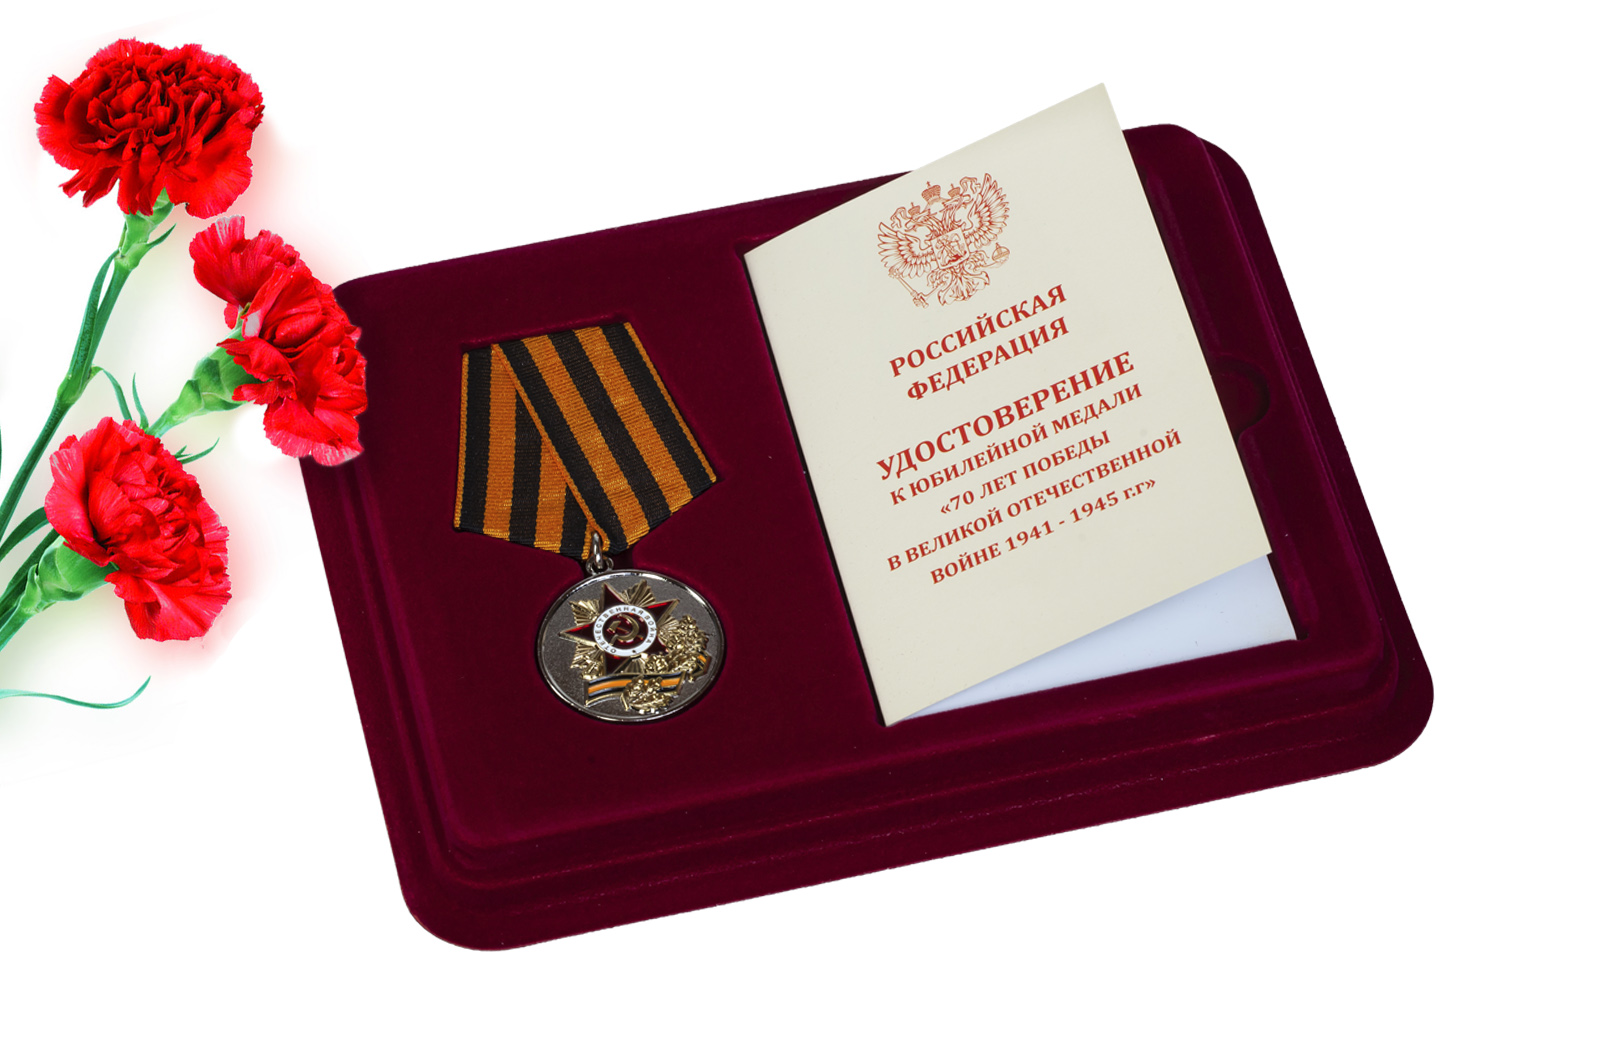 Купить медаль 70 лет Победы в ВОВ с доставкой в ваш город